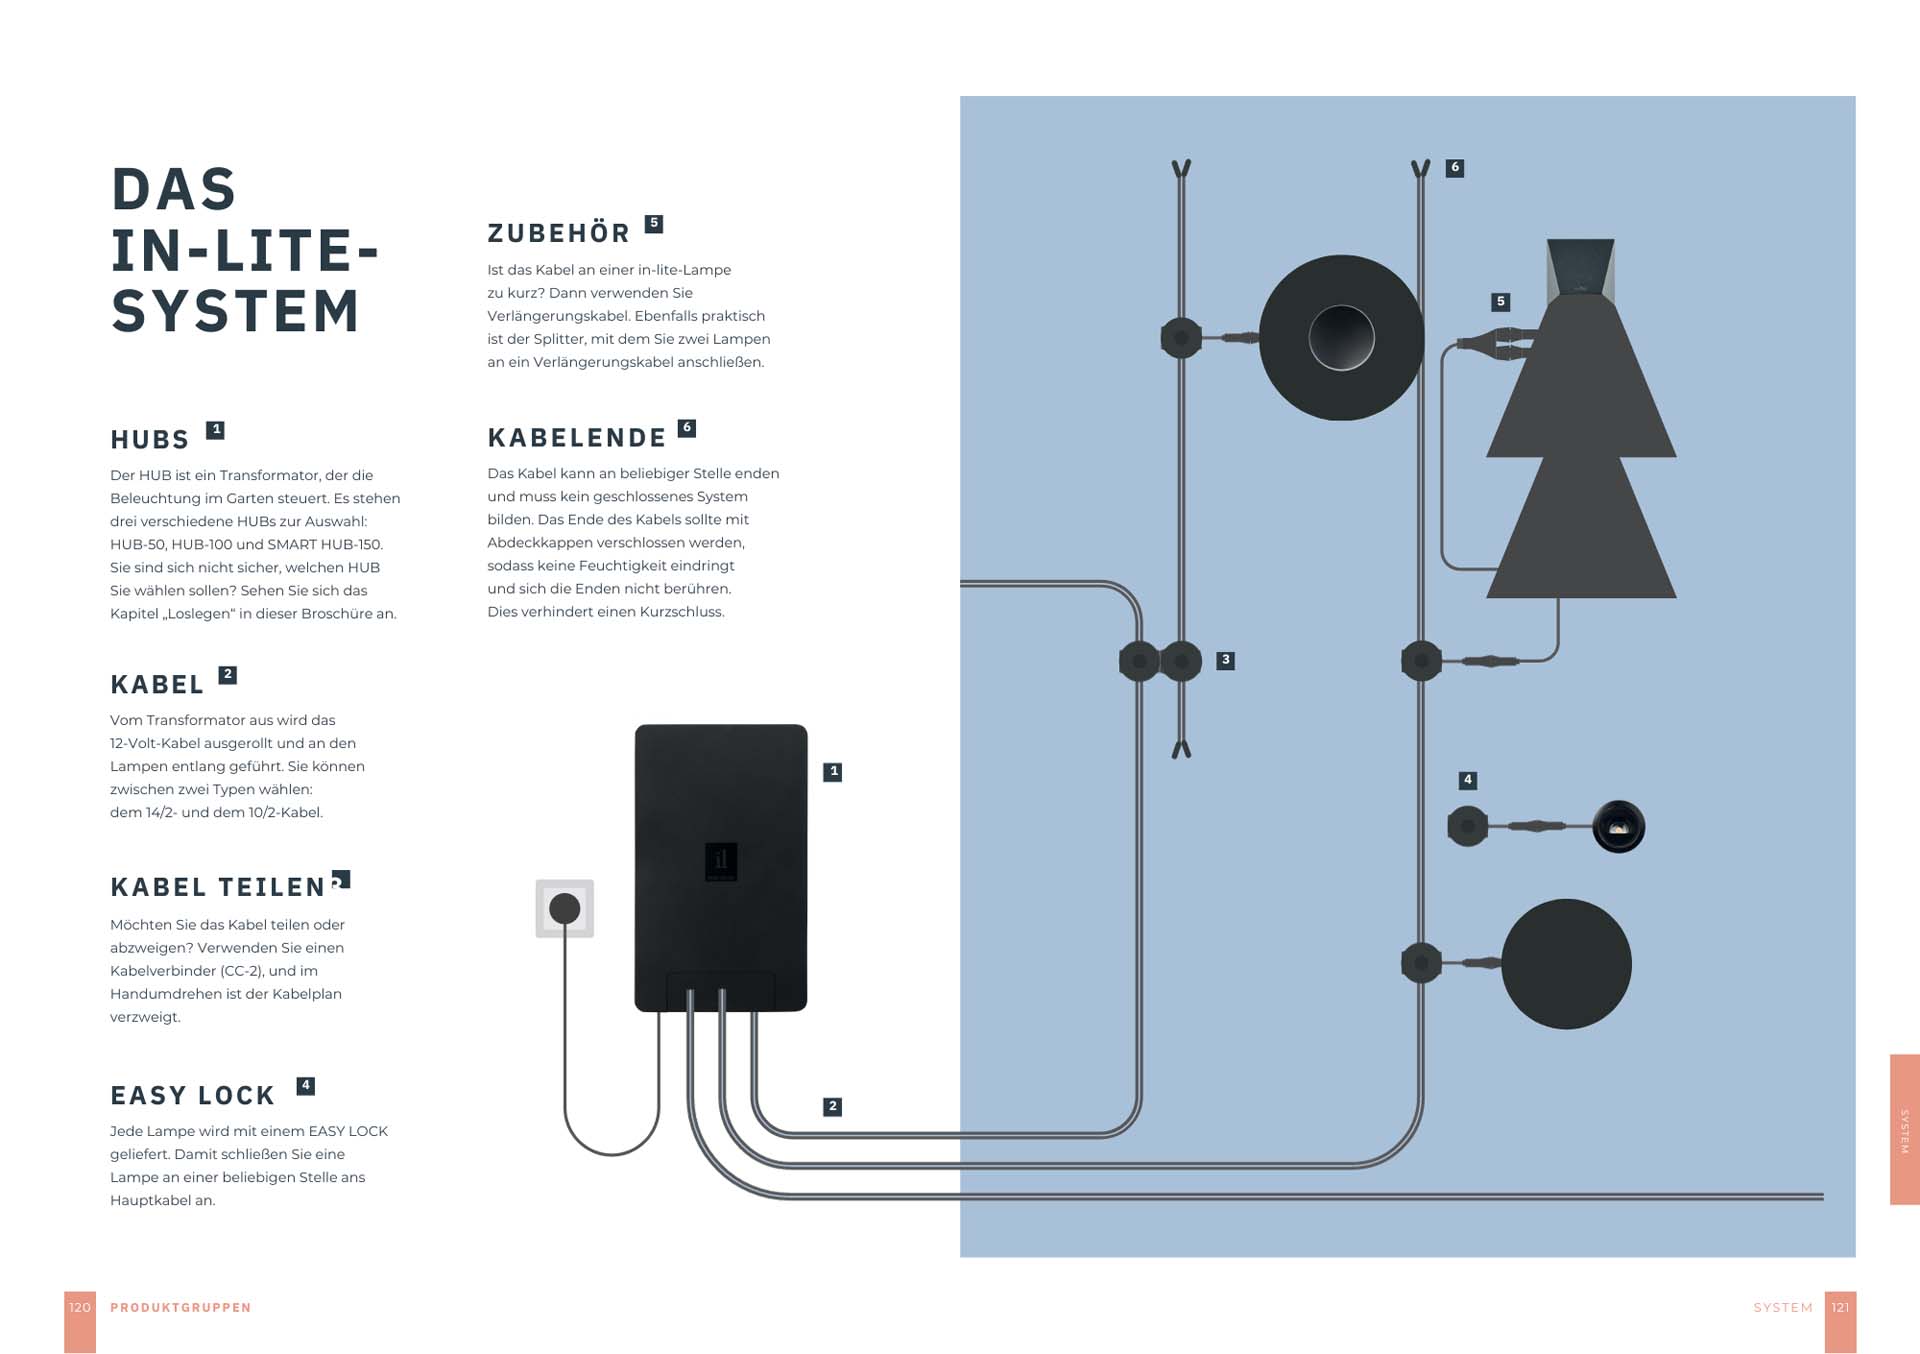 Seite aus einem Katalog mit einer schematischen Darstellung des IN-LITE-Beleuchtungssystems, einschließlich Hubs, Kabeln und Zubehör.